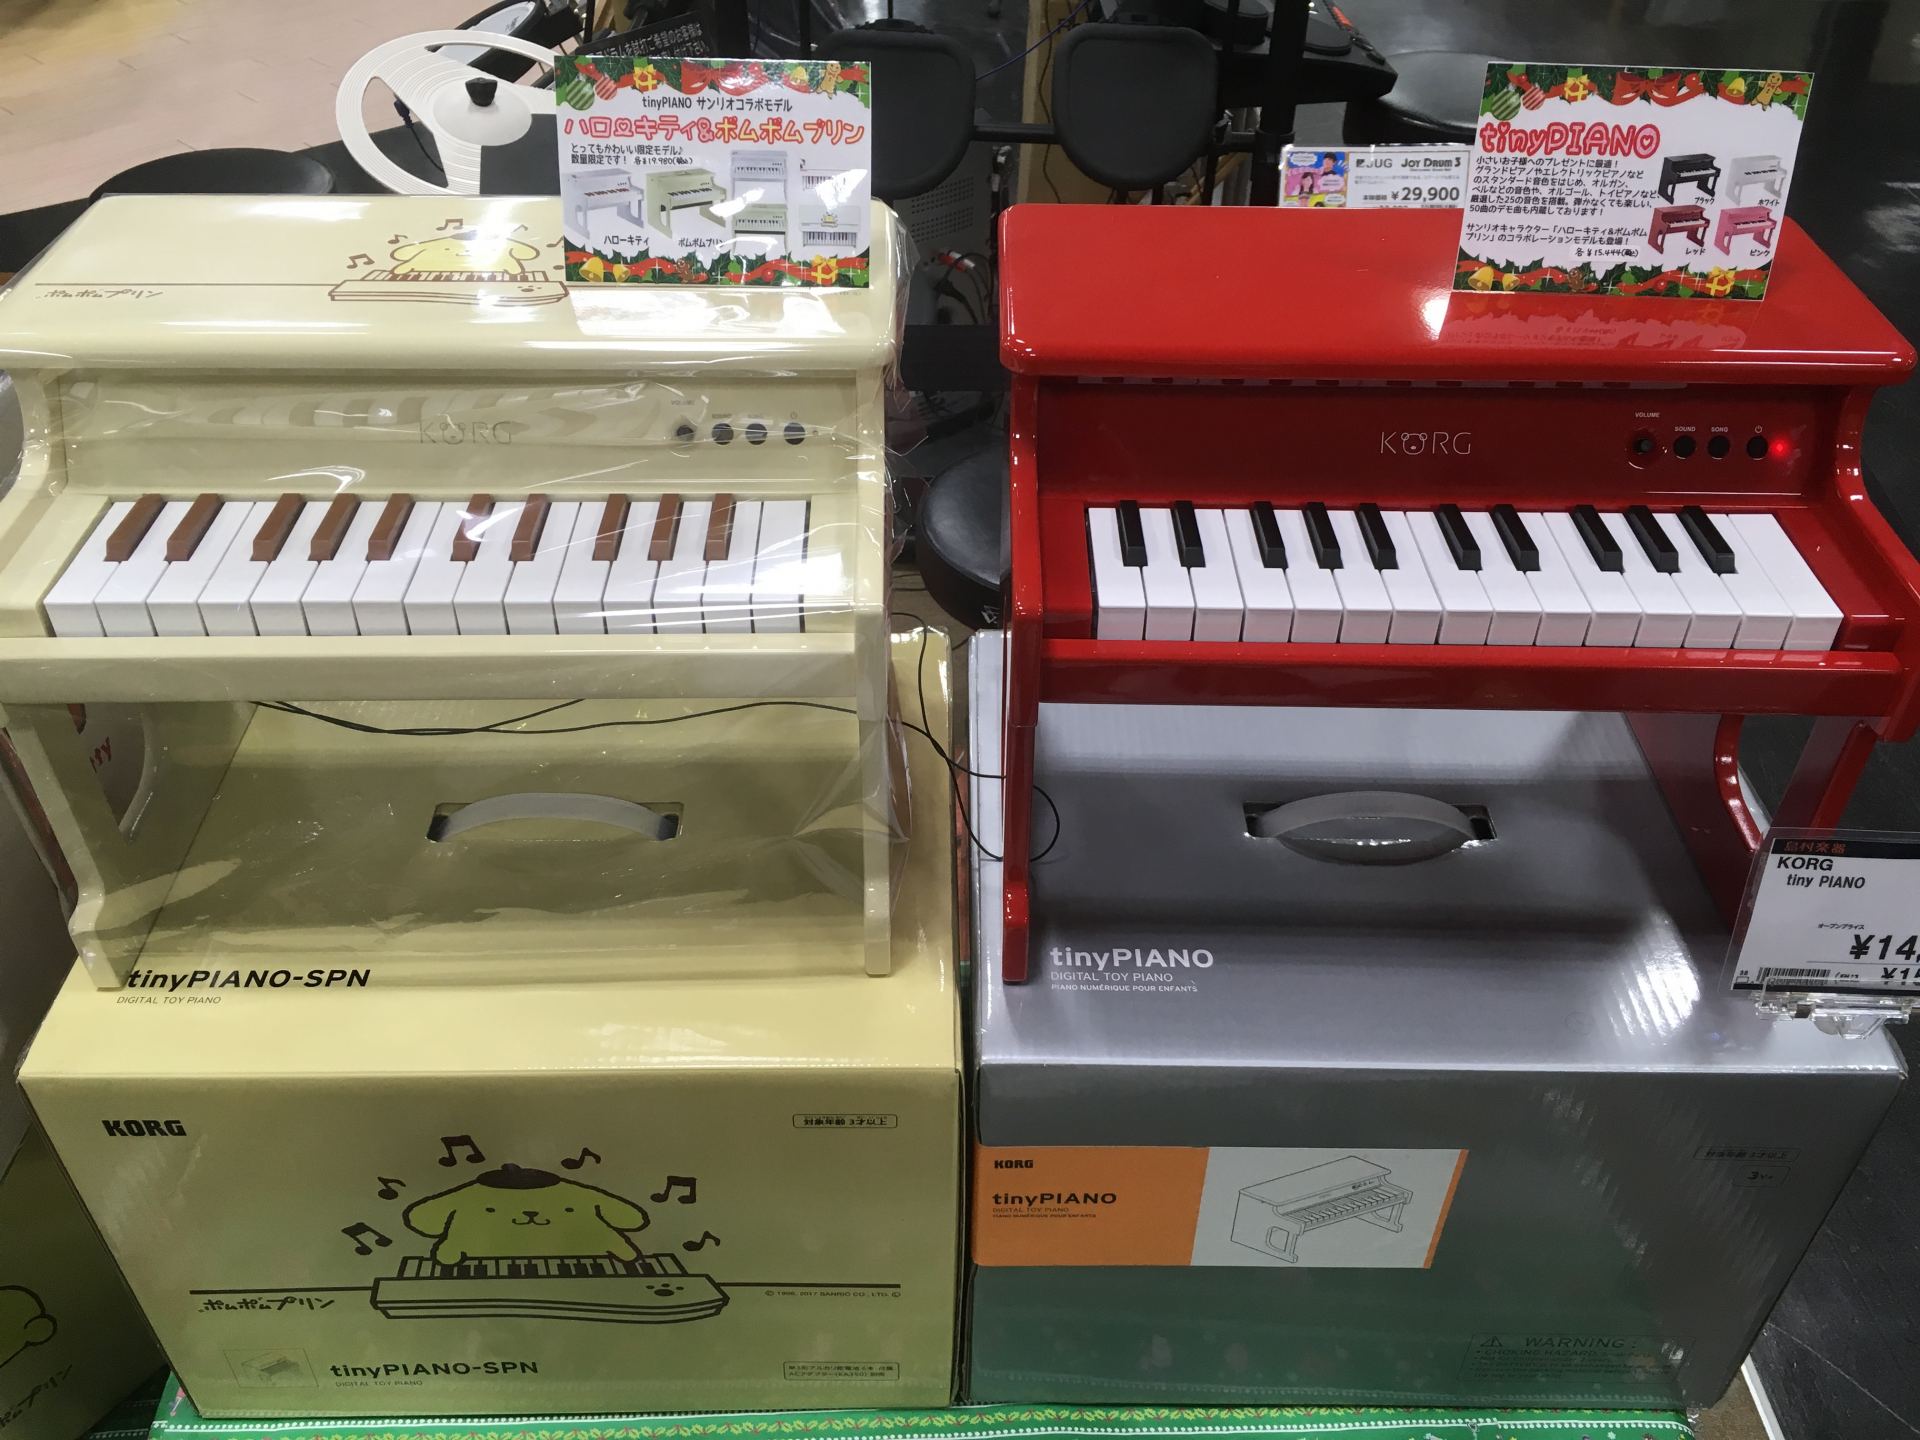 トイピアノ クリスマスプレゼント特集 Korg Tiny Pianoのご紹介 かわいいサンリオコラボモデルも展示中 ミ ナーラ奈良店 店舗情報 島村楽器